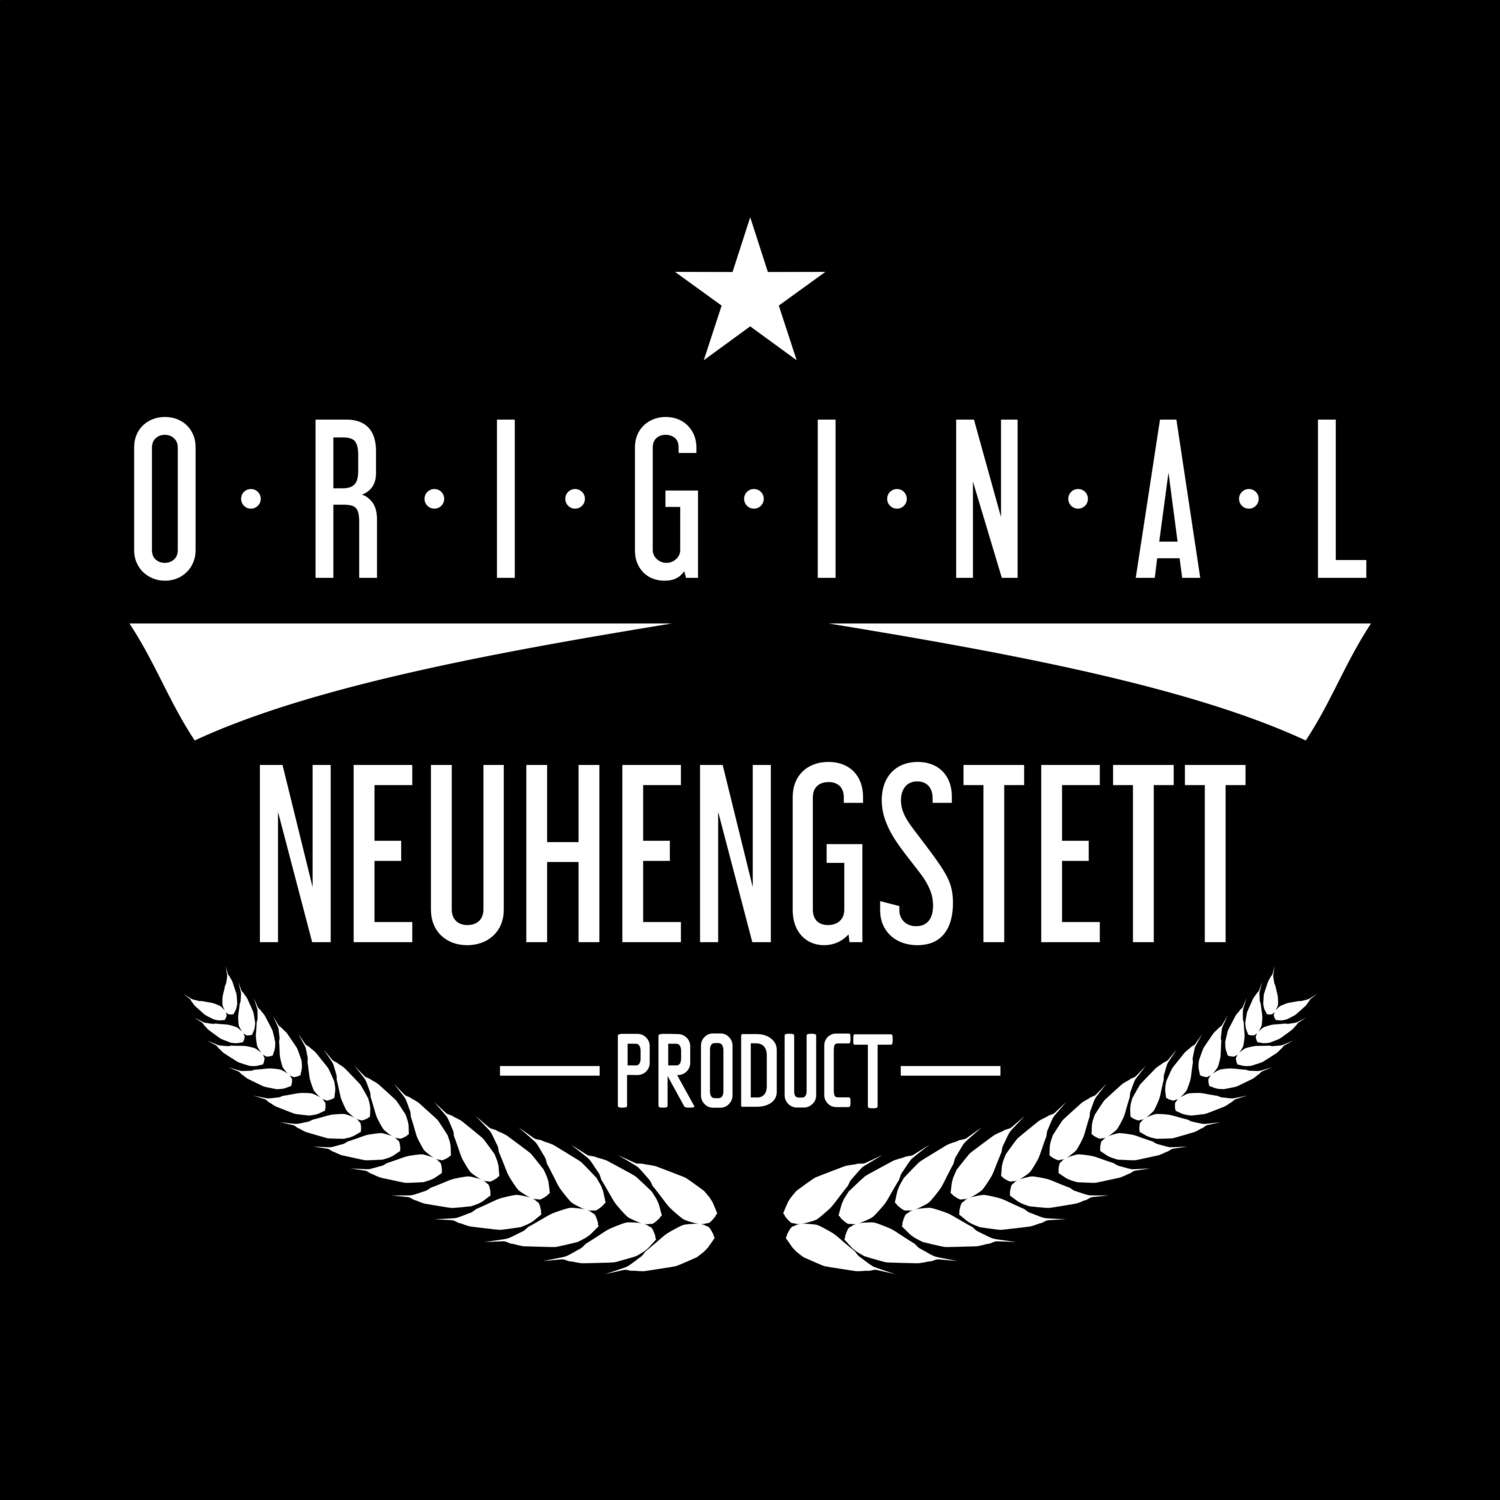 Neuhengstett T-Shirt »Original Product«